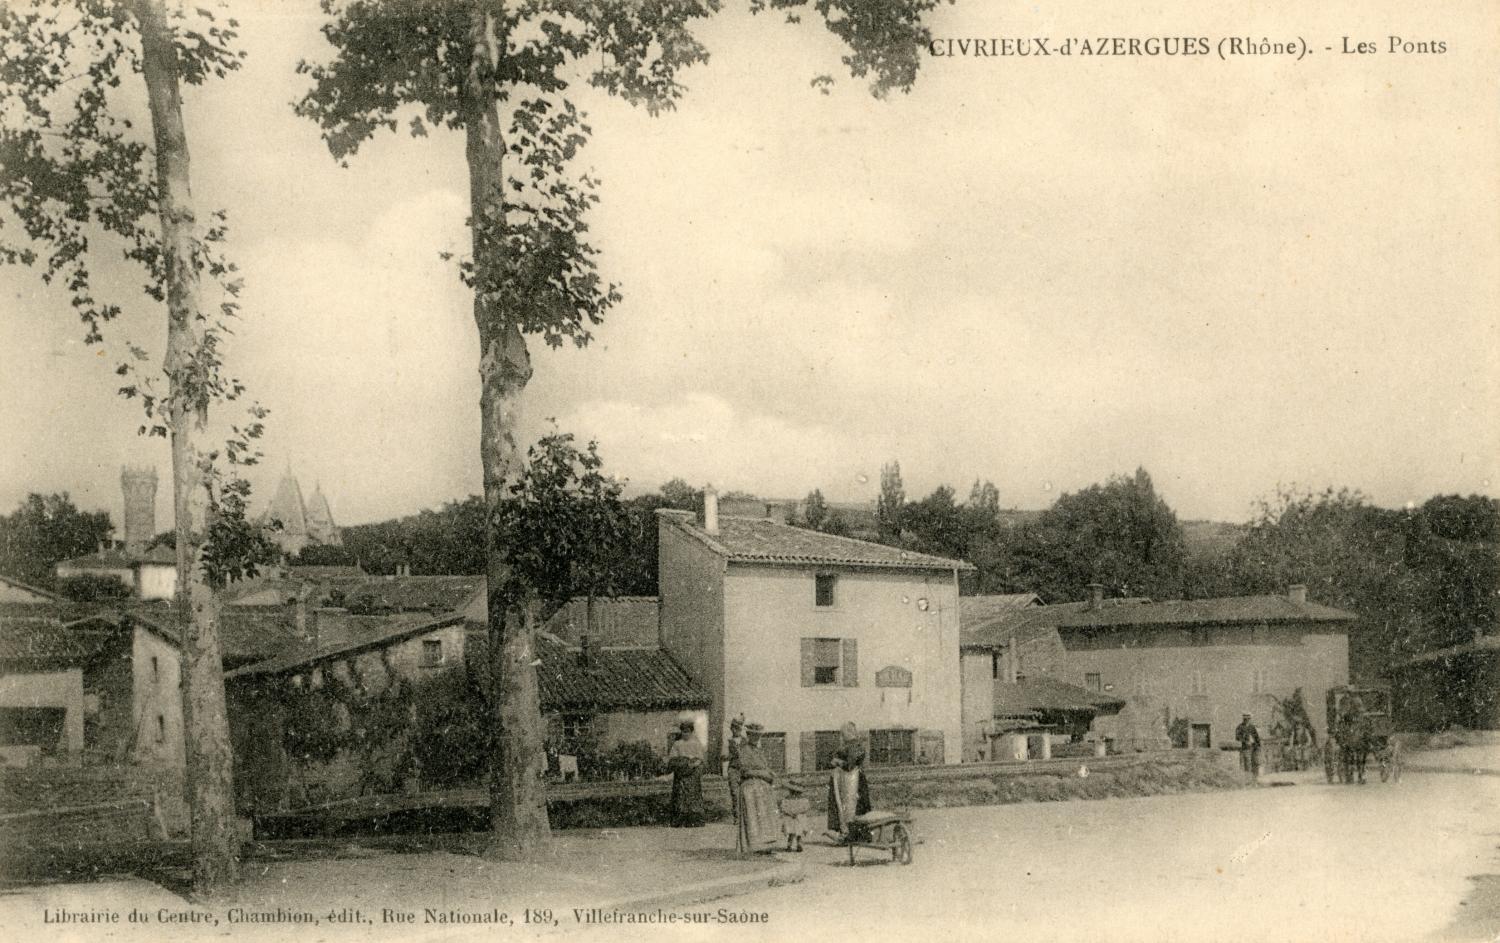 Civrieux-d'Azergues (Rhône). - Les ponts